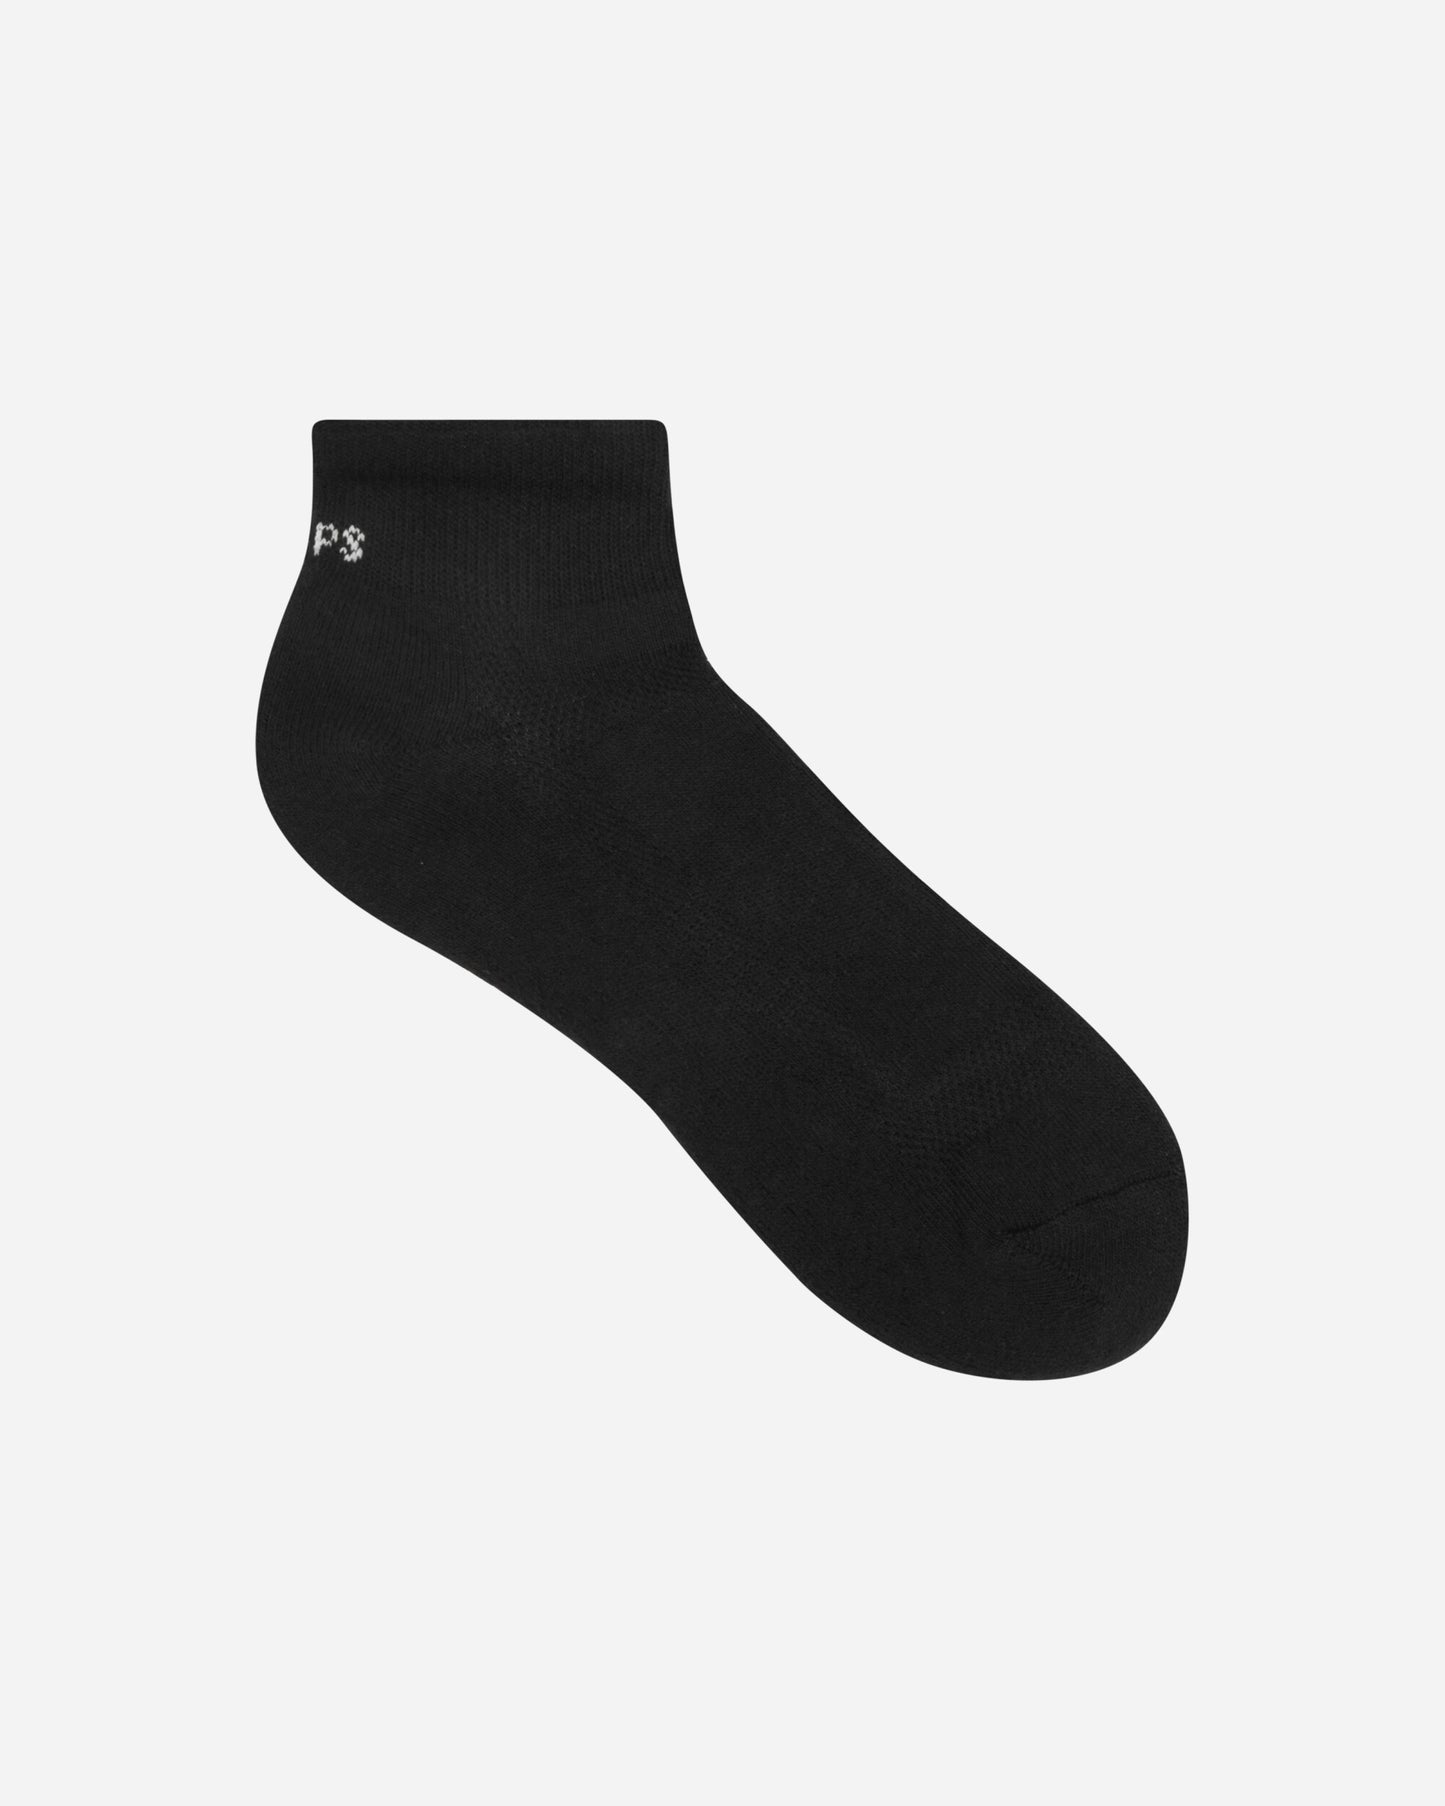 WTAPS Underwear 04 Black Underwear Socks 232MYDT-UWM04 BK